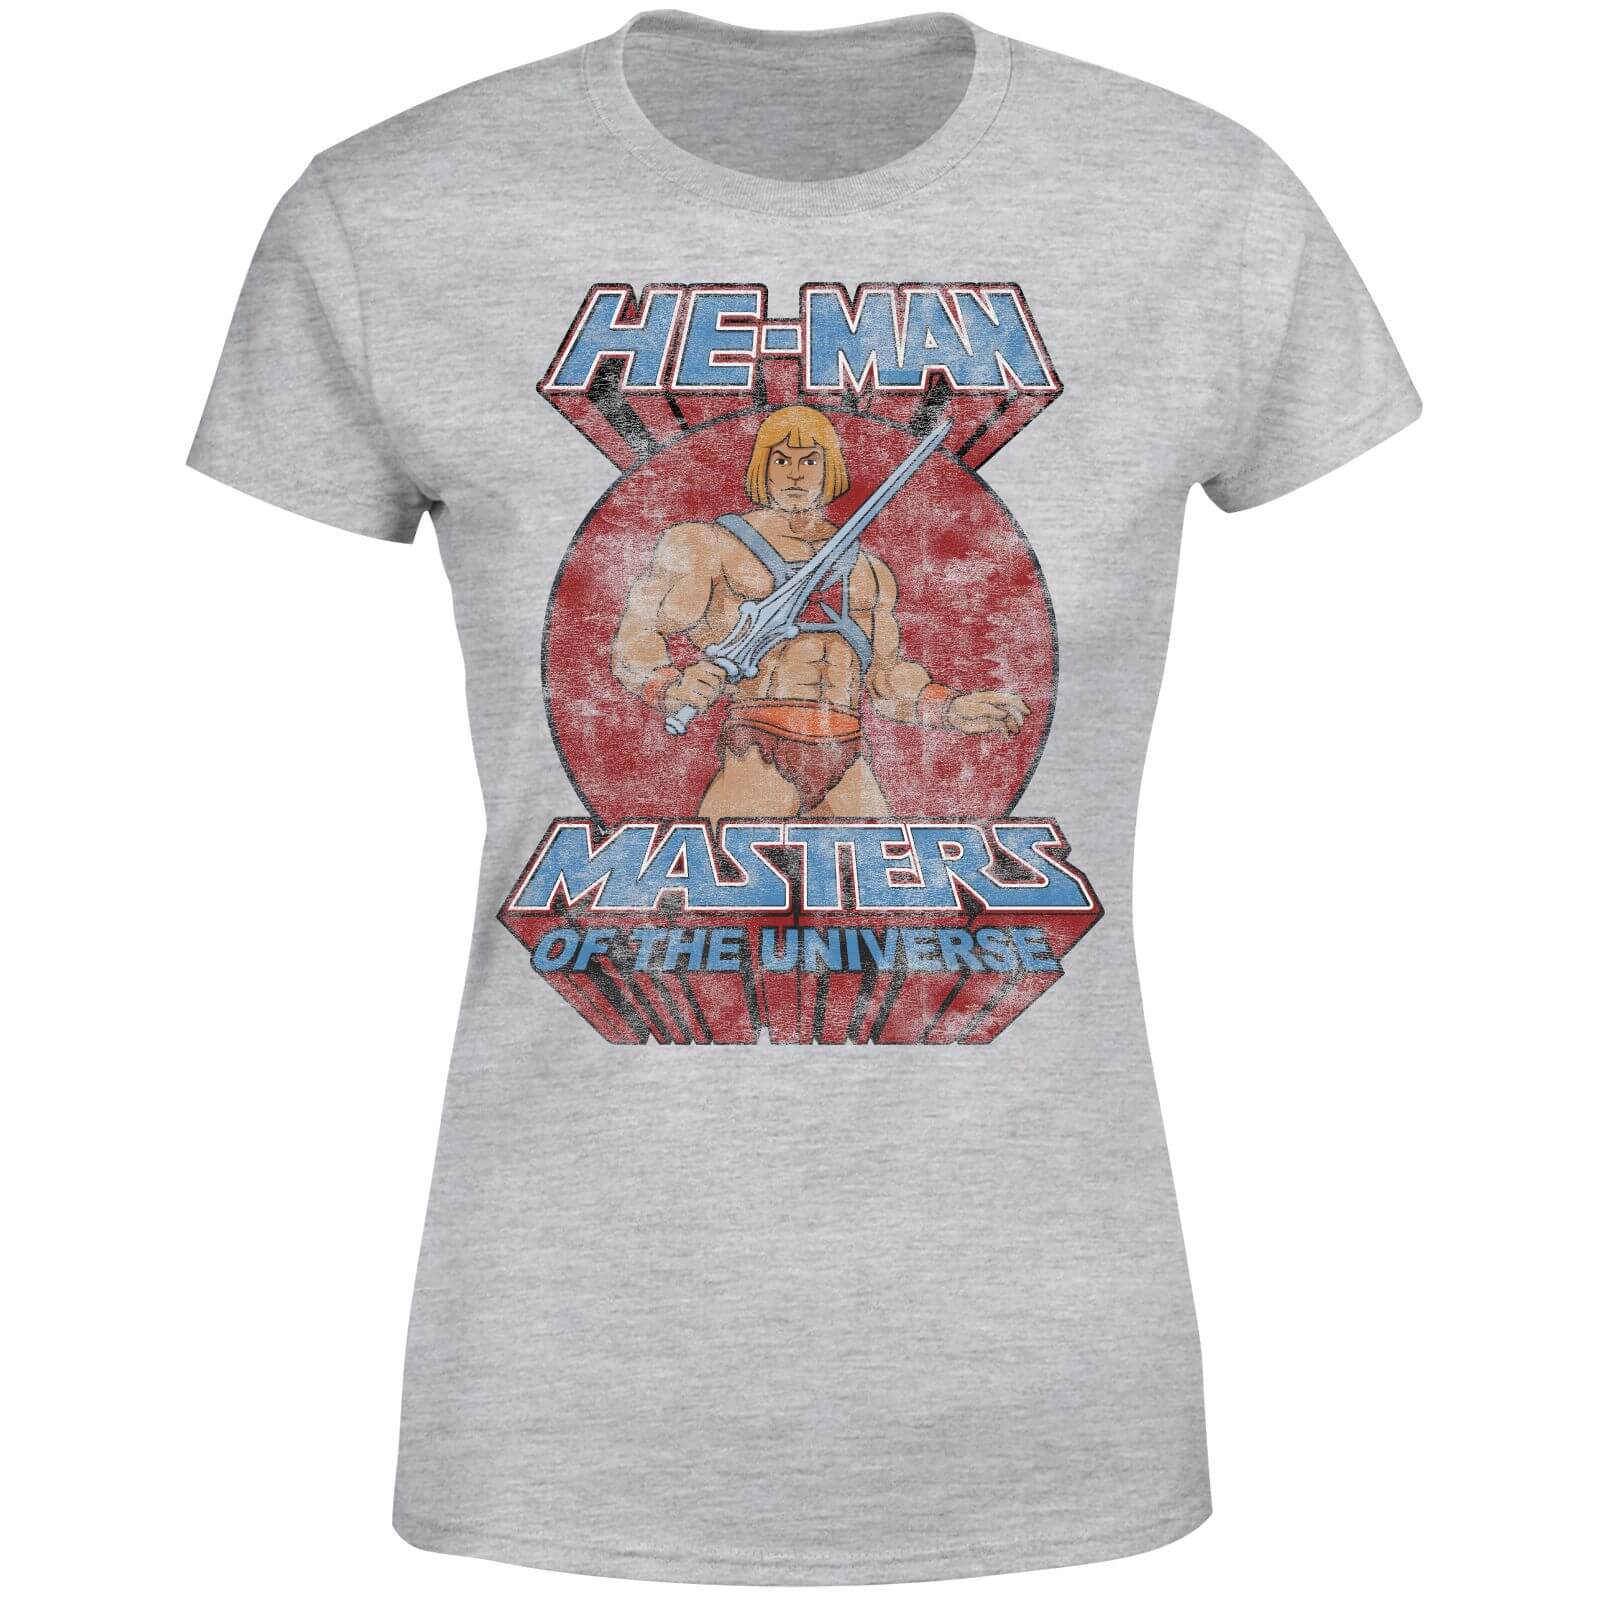 He-Man Distressed Women's T-Shirt - Grey - S - Grey